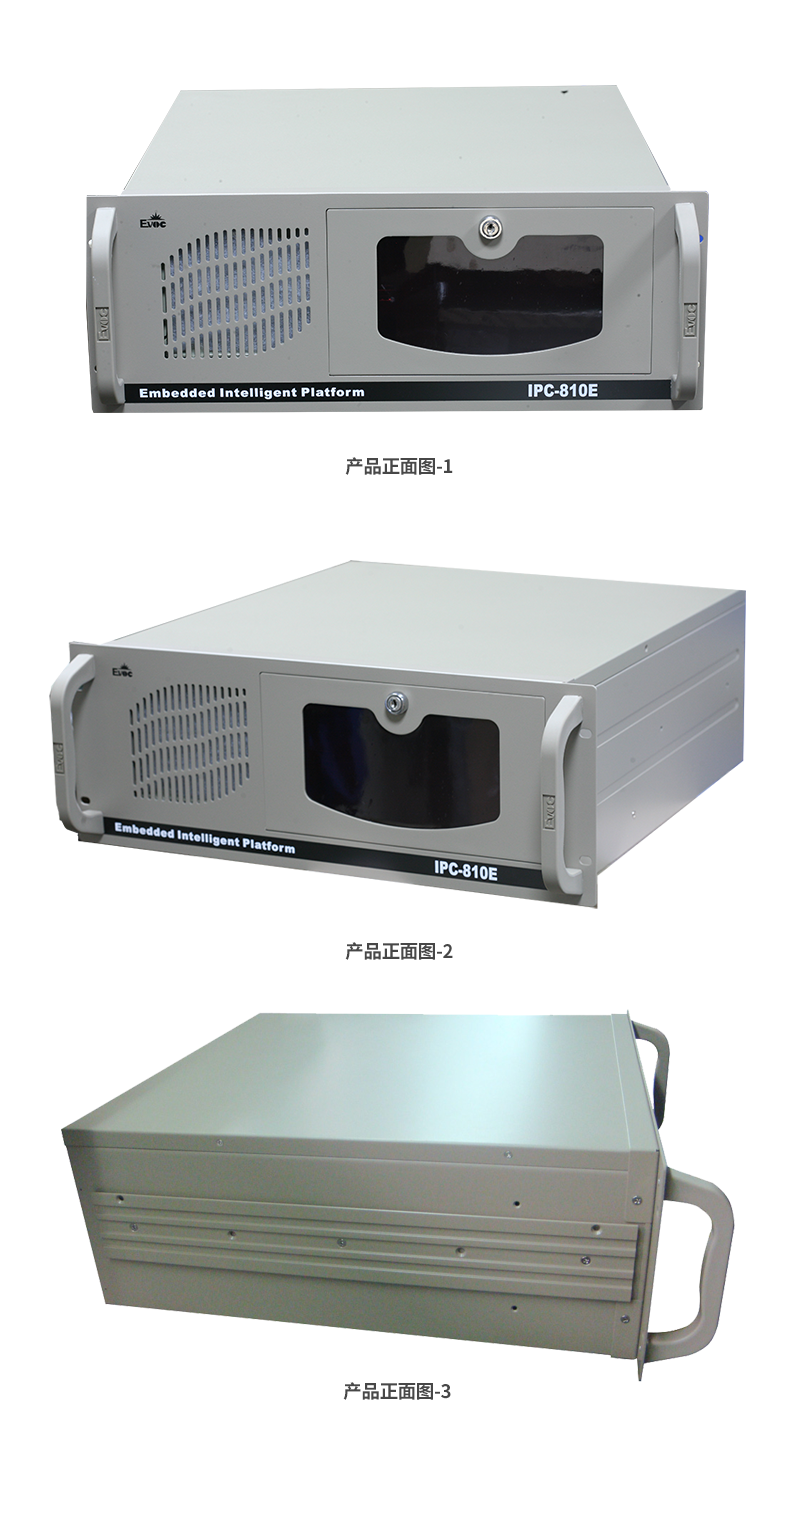 IPC-810E/EPI-1813CLD2NA-D4M1/D410/1G/带硬盘 研祥工控机 IPC-810E,工控机,研祥